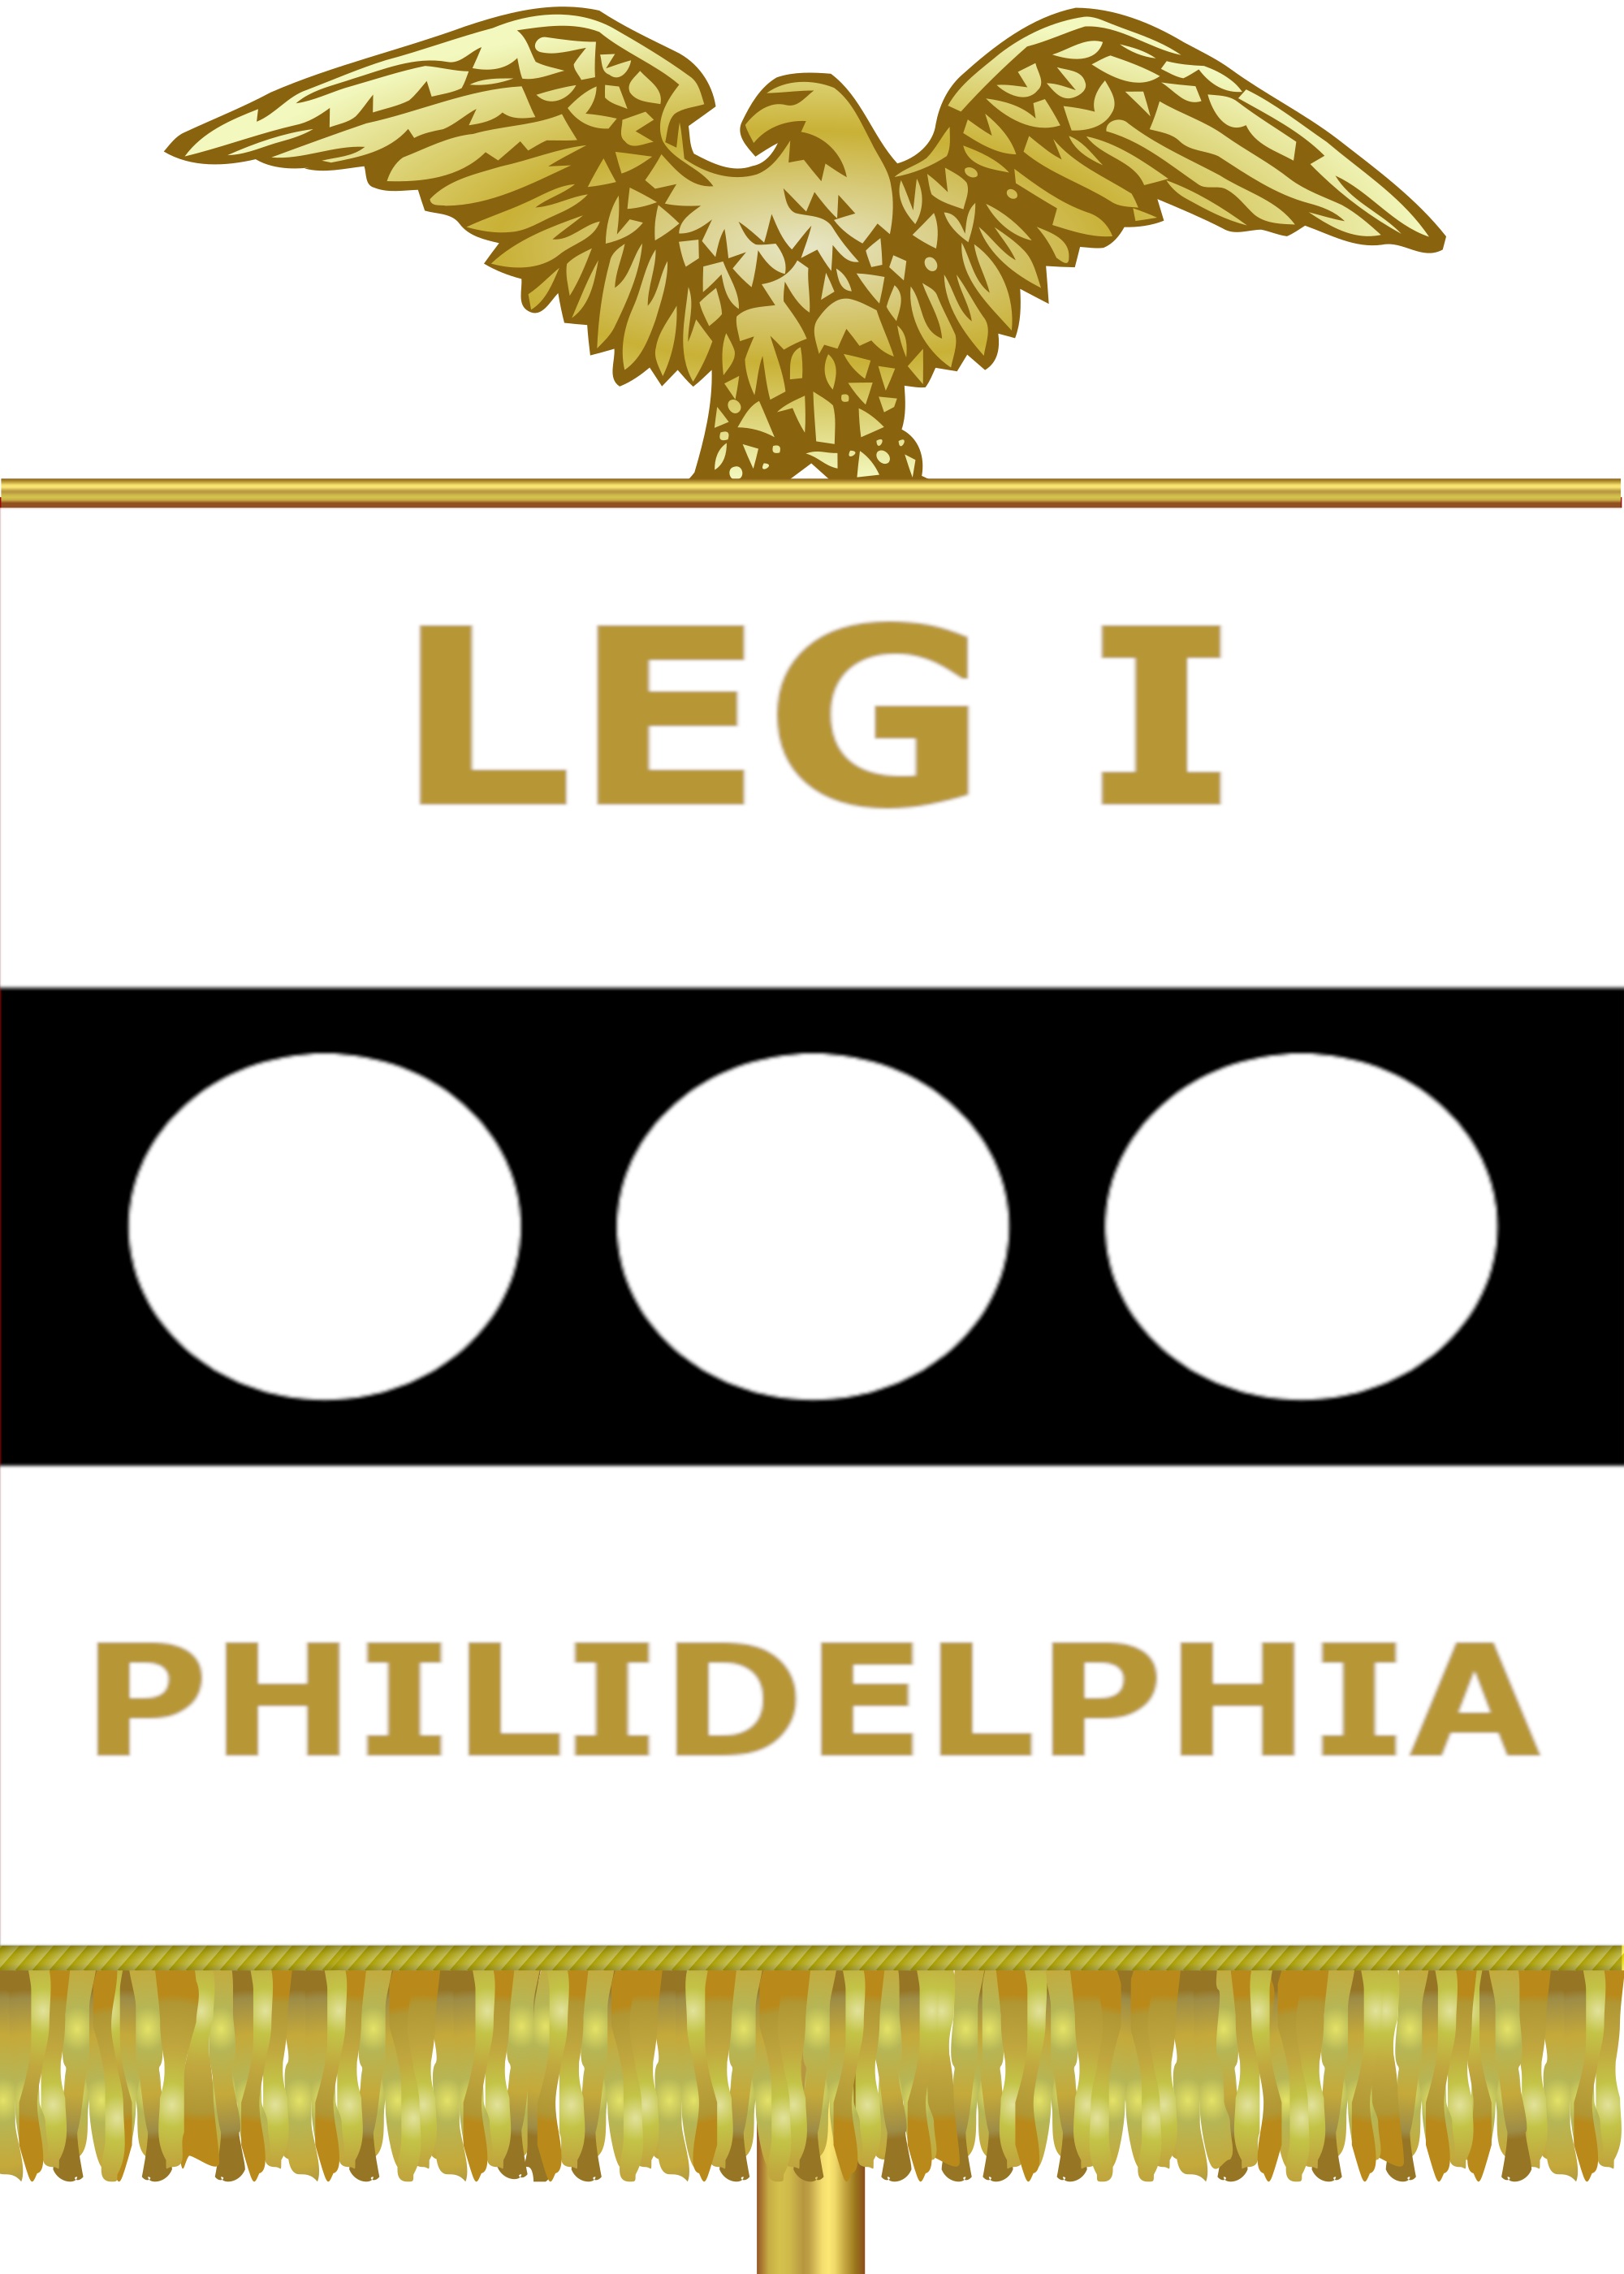 Legion I Philidelphia.jpg